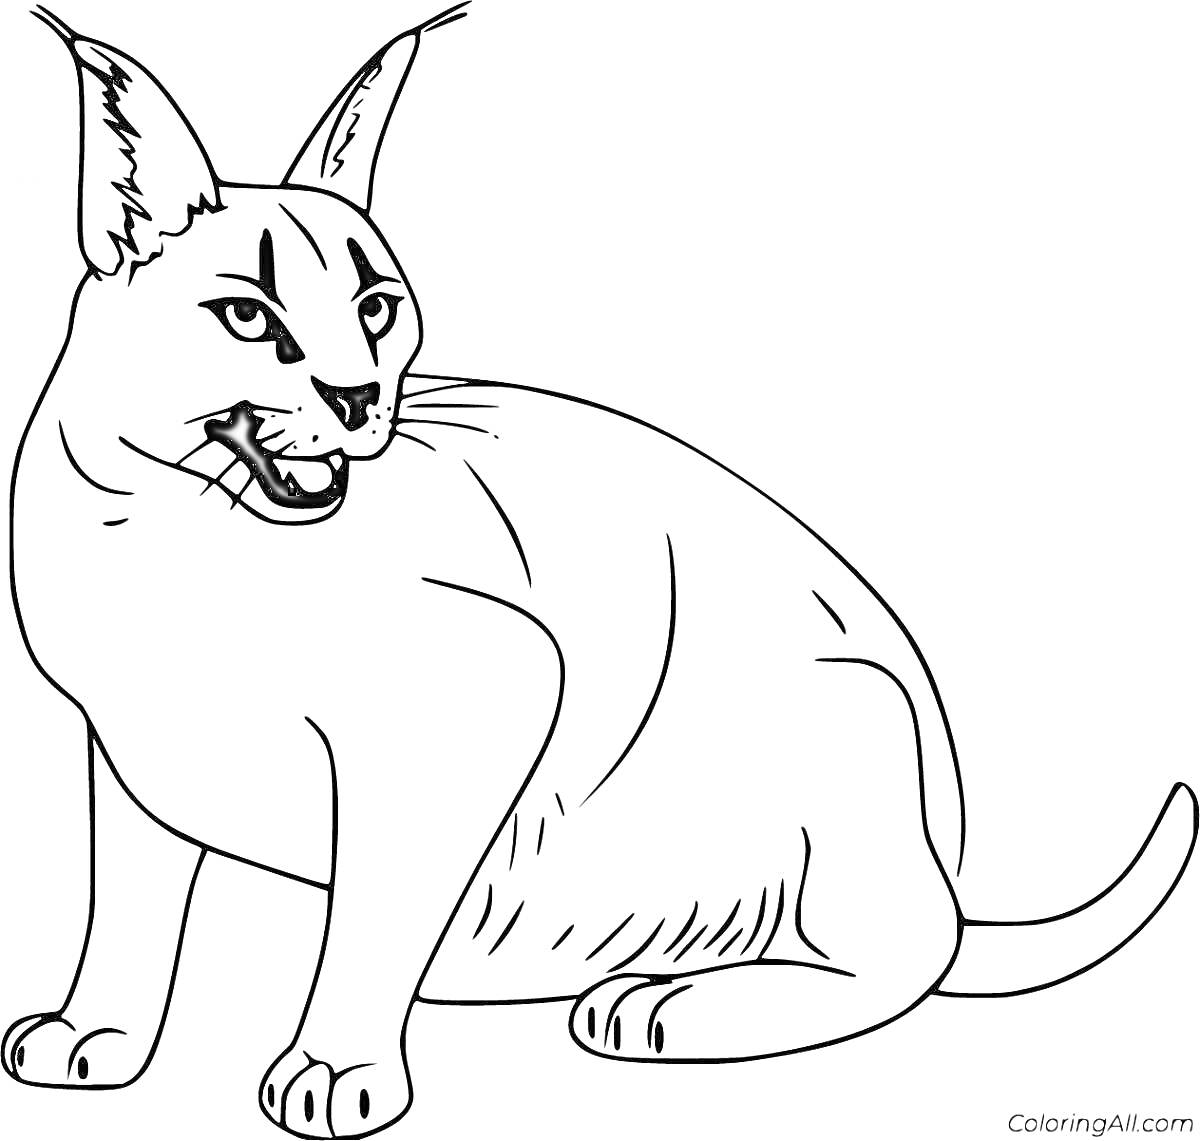 Раскраска Раскраска кот каракал с полосами на теле сидя